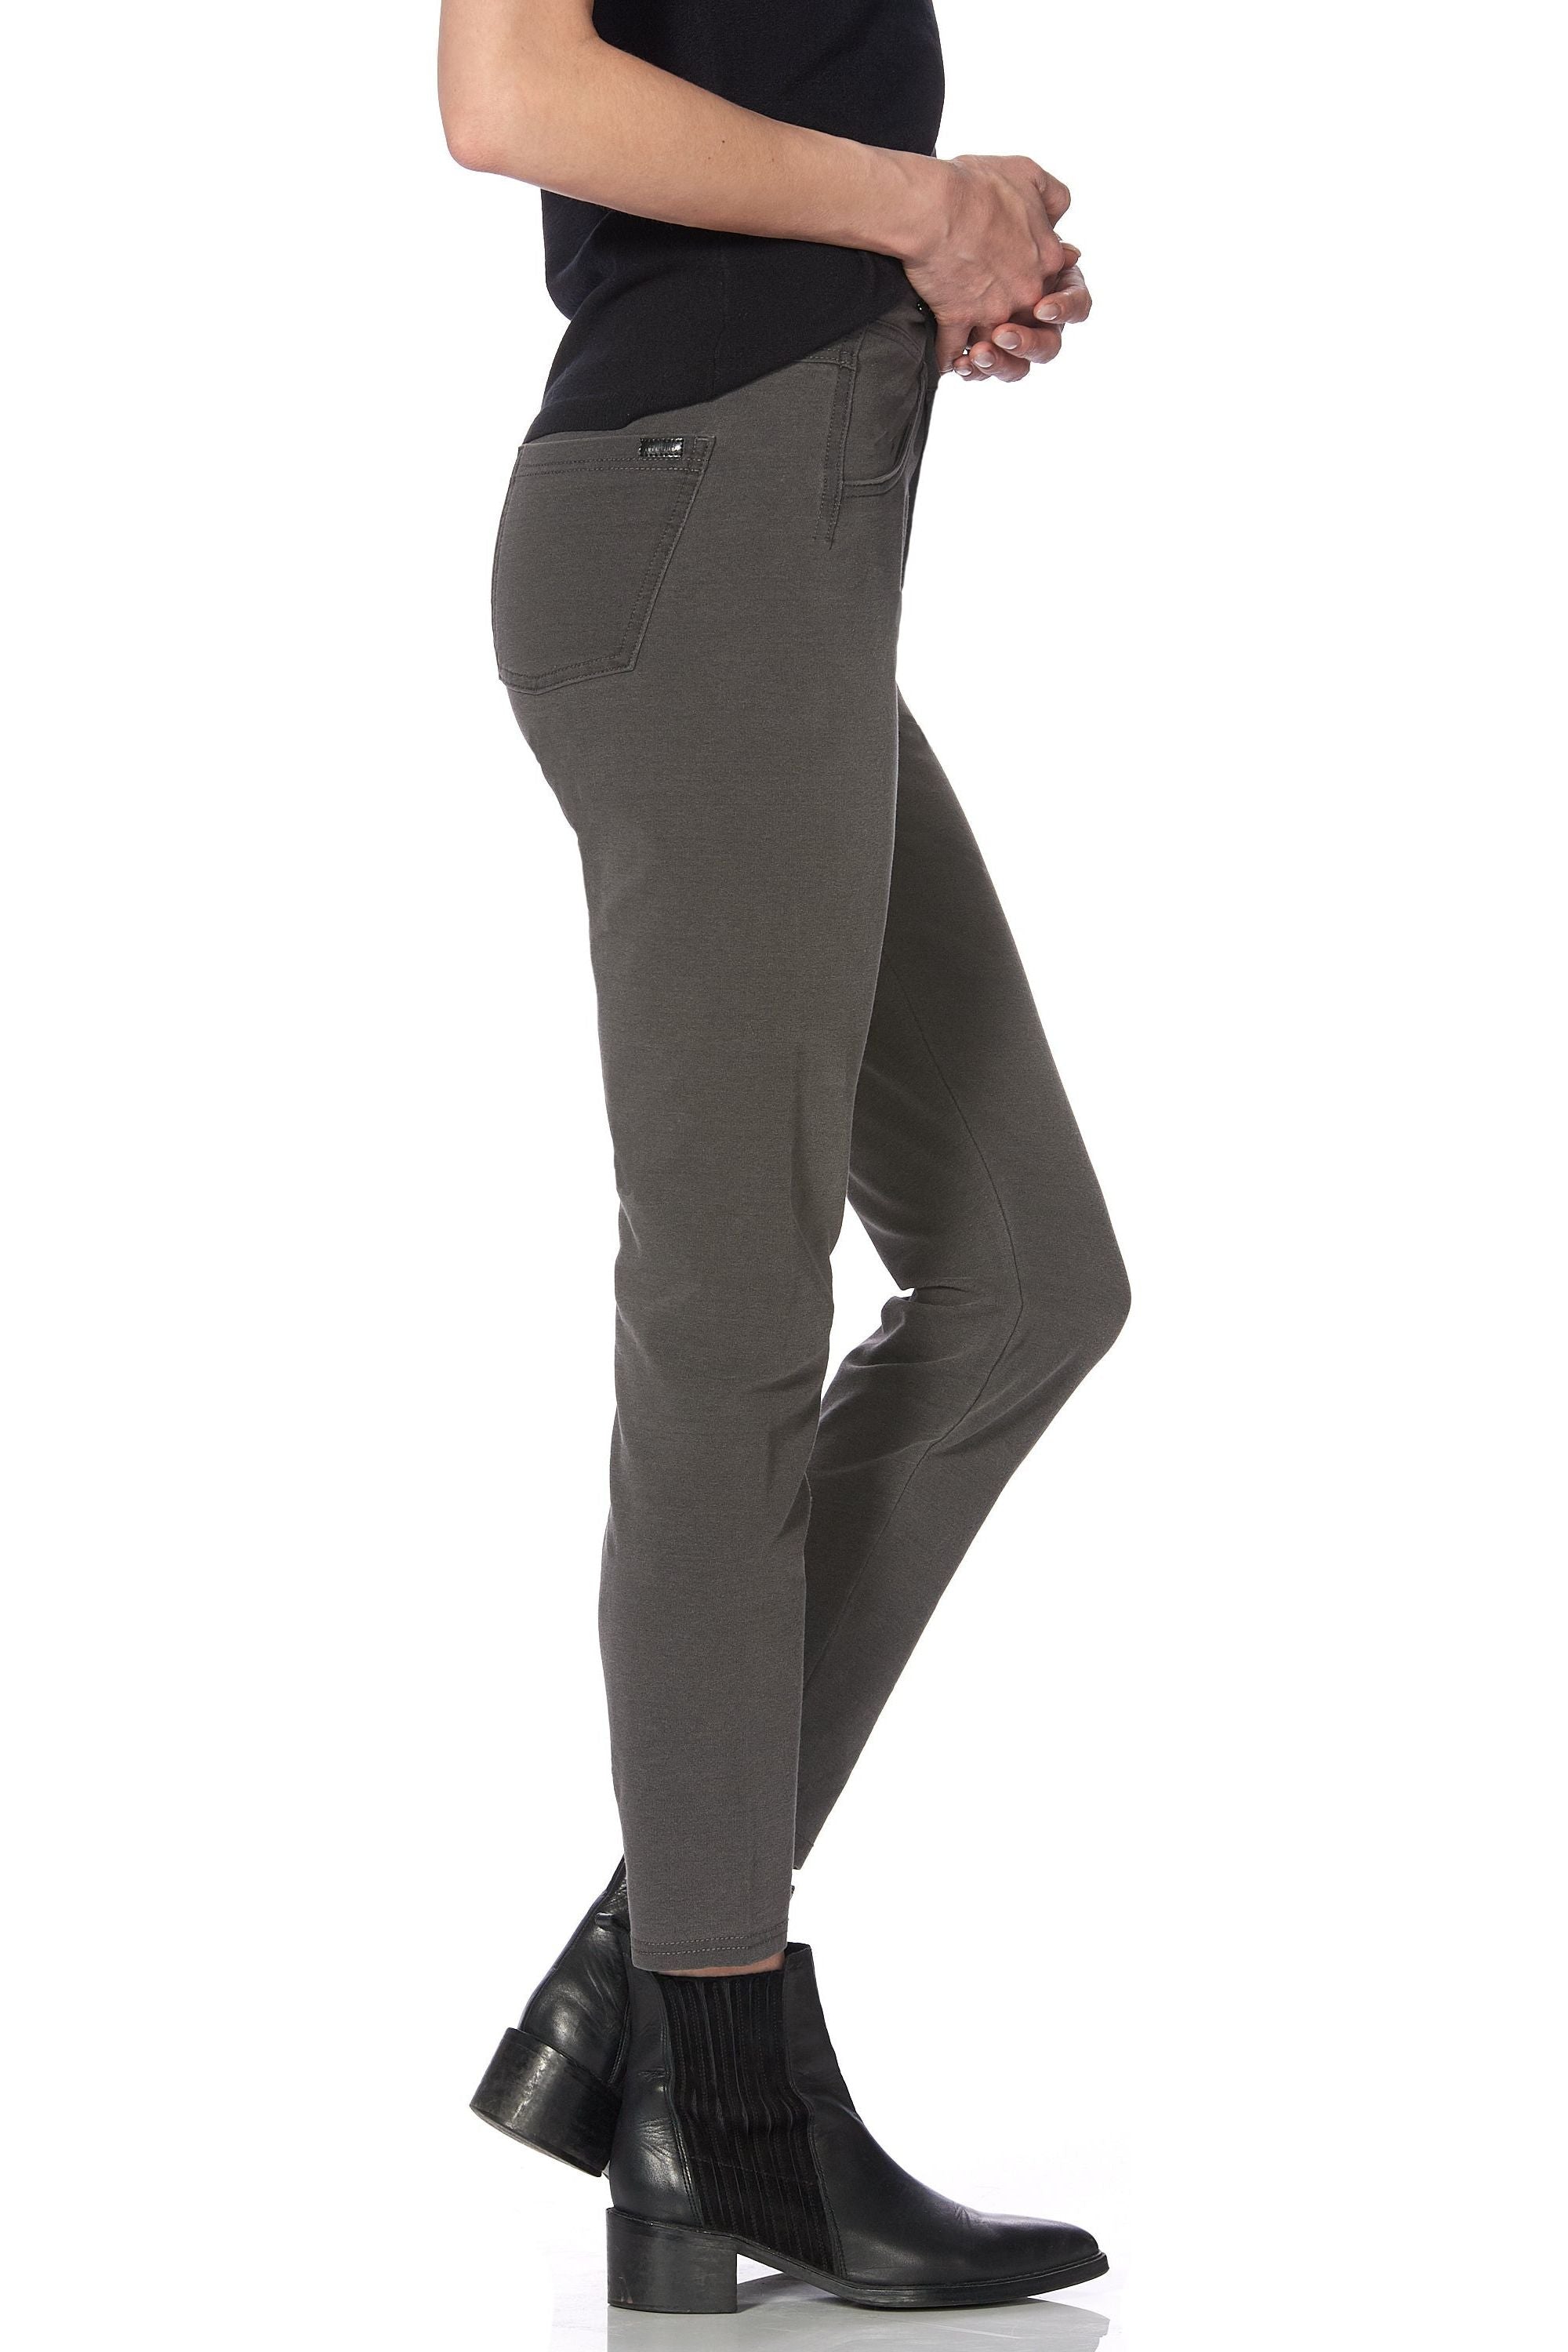 HUE Super Soft Stretch Denim Leggings - Style 22818 – Close To You Boutique